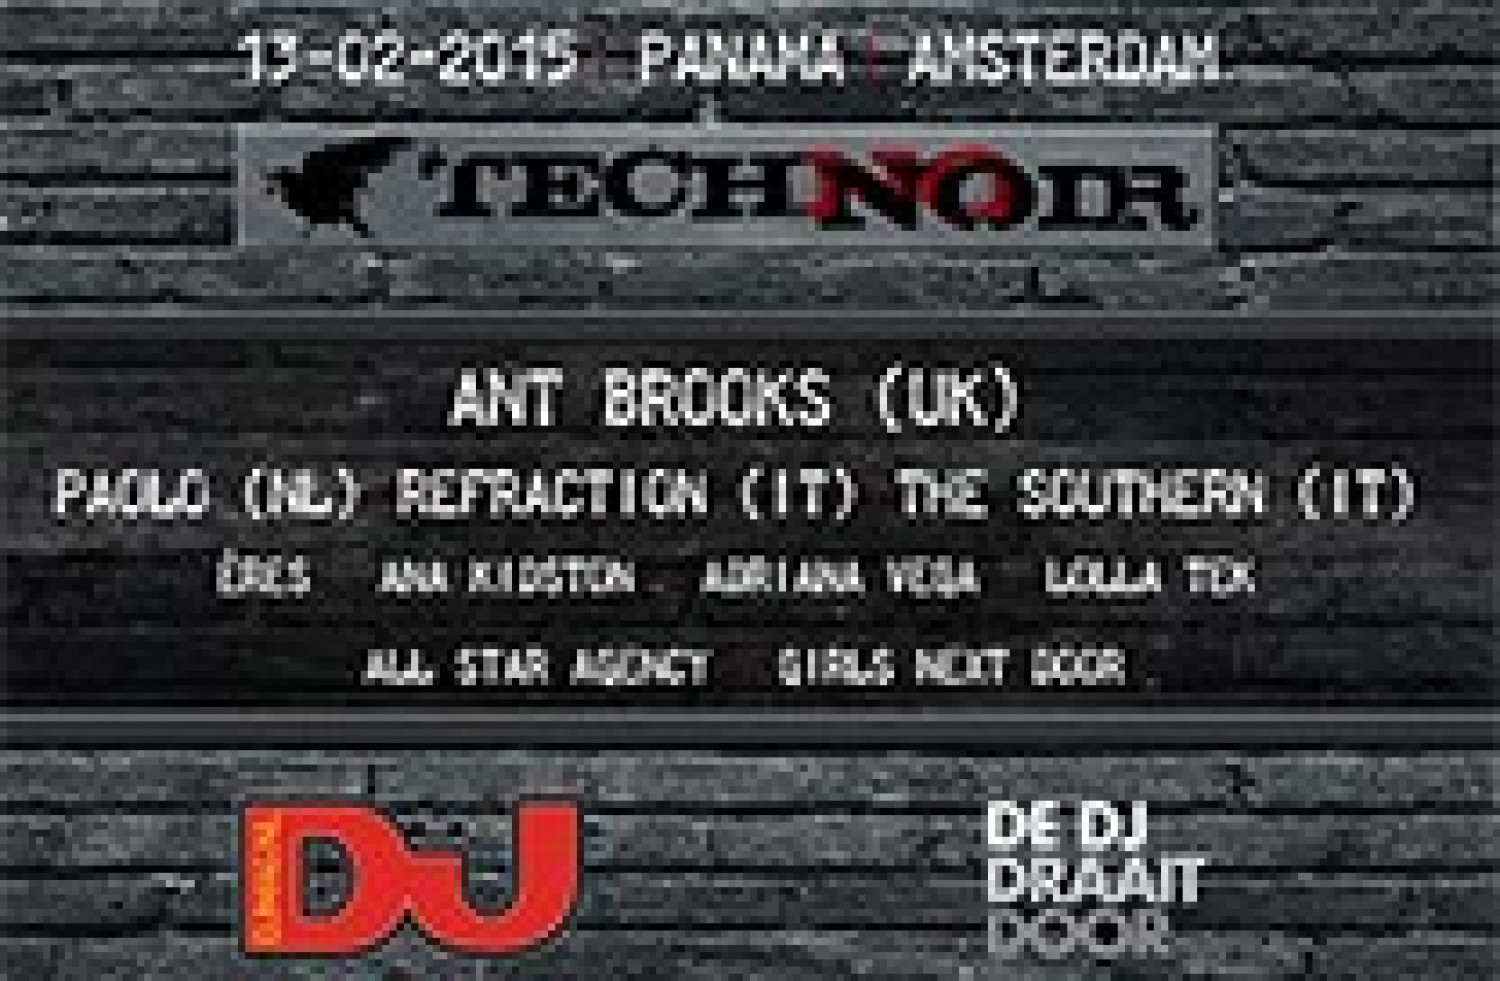 Party nieuws: Techno Noir strijkt neer in Panama Amsterdam